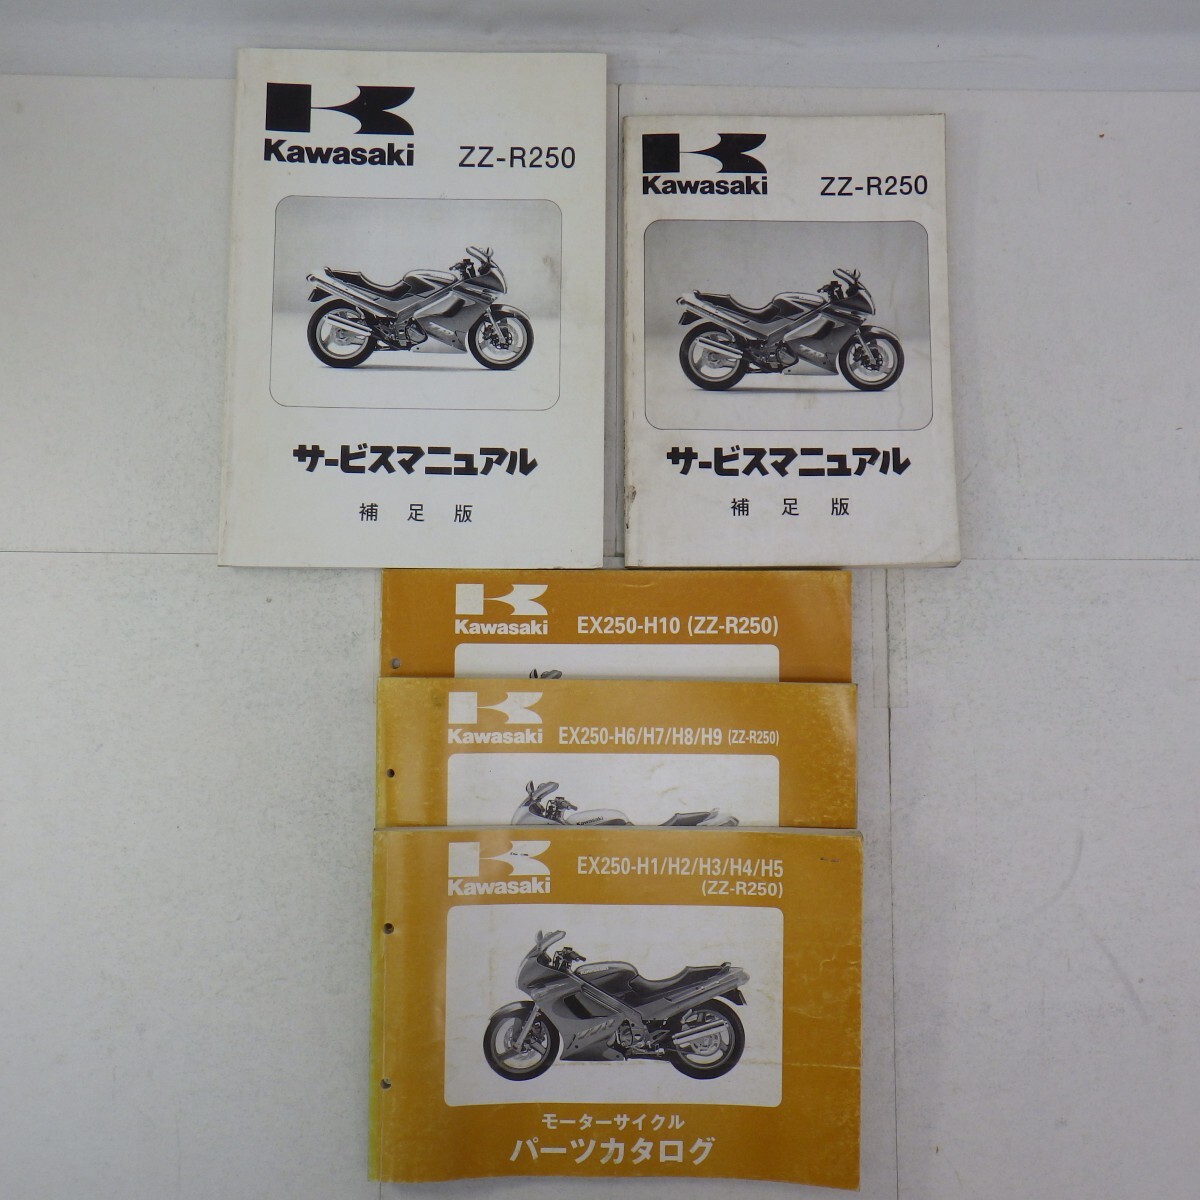  Kawasaki [ZZ-R250] руководство по обслуживанию дополнение версия + каталог запчастей совместно 5 шт. комплект /EX250-H/ список запасных частей /KAWASAKI/ мотоцикл сервисная книжка / повреждение иметь P